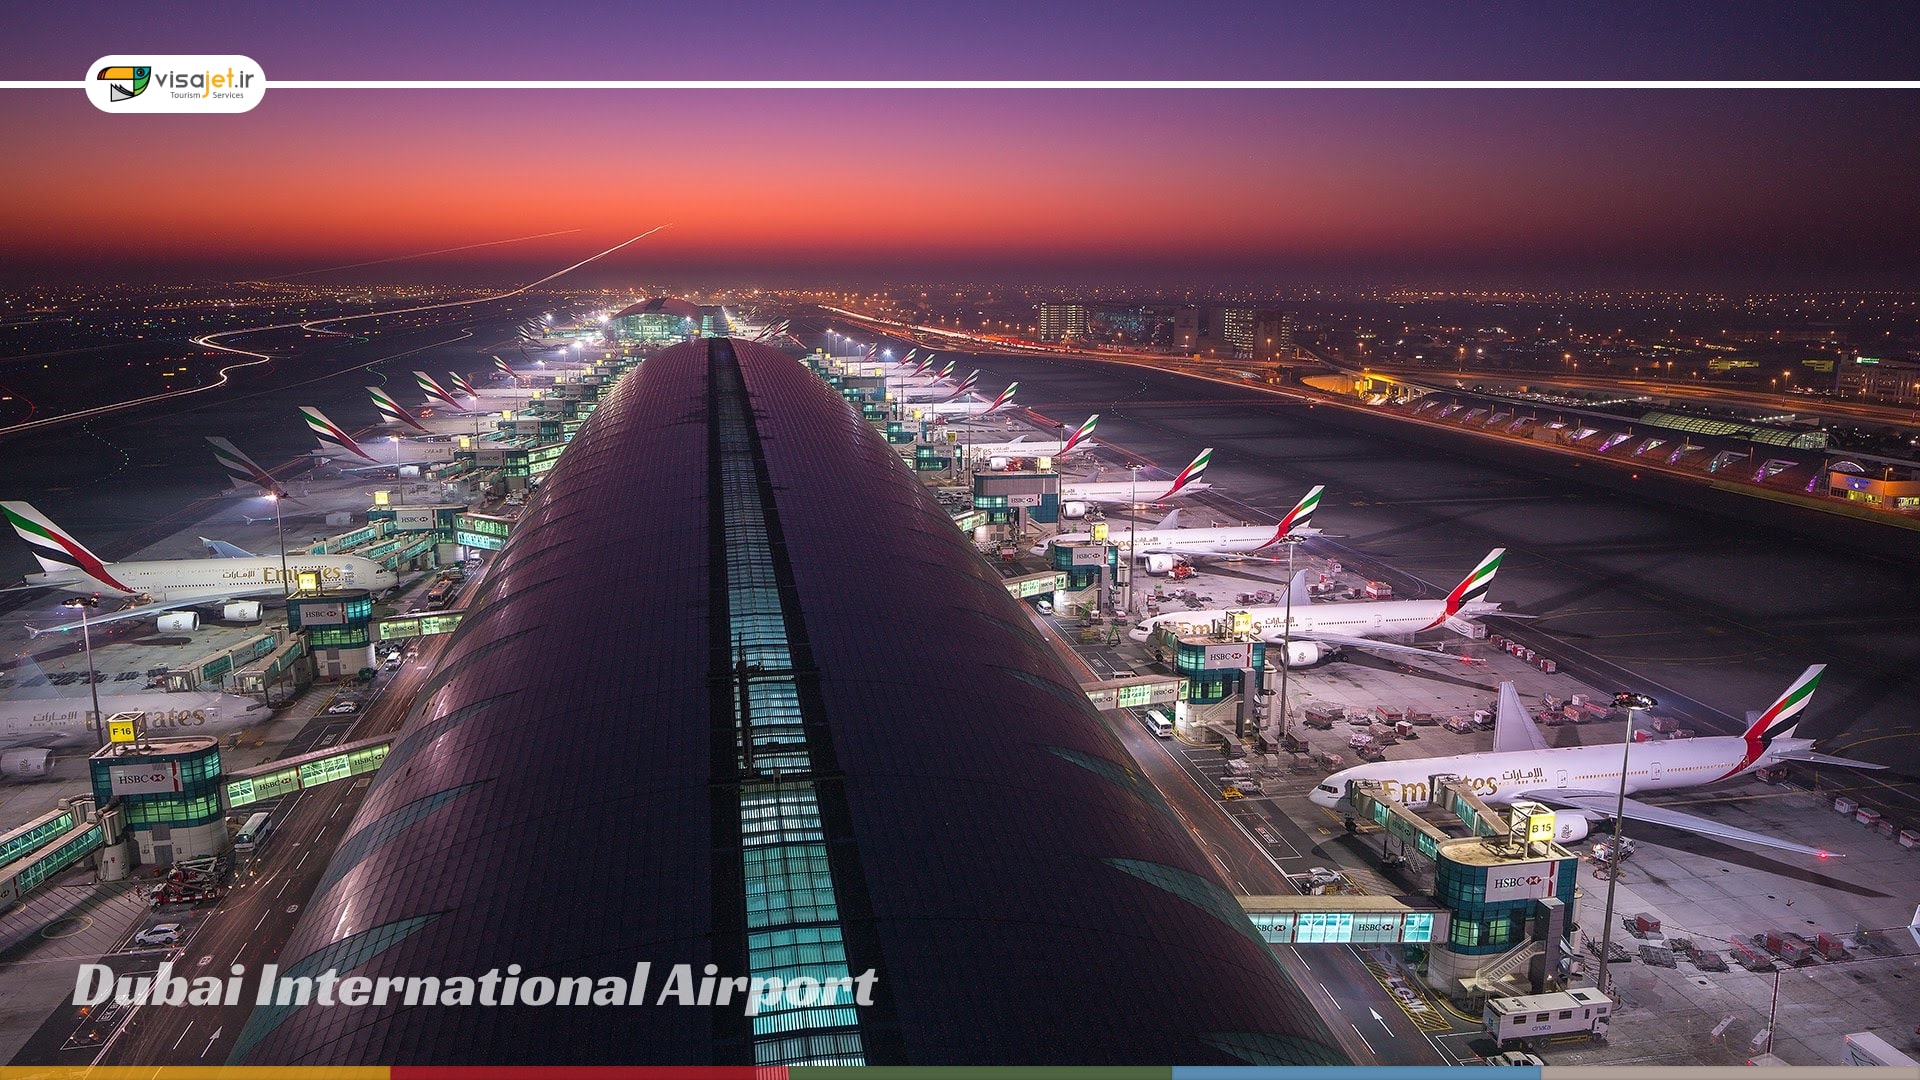 درباره فرودگاه بین المللی دبی؛ تاریخچه و اطلاعات کامل پروازی و ترانزیتی